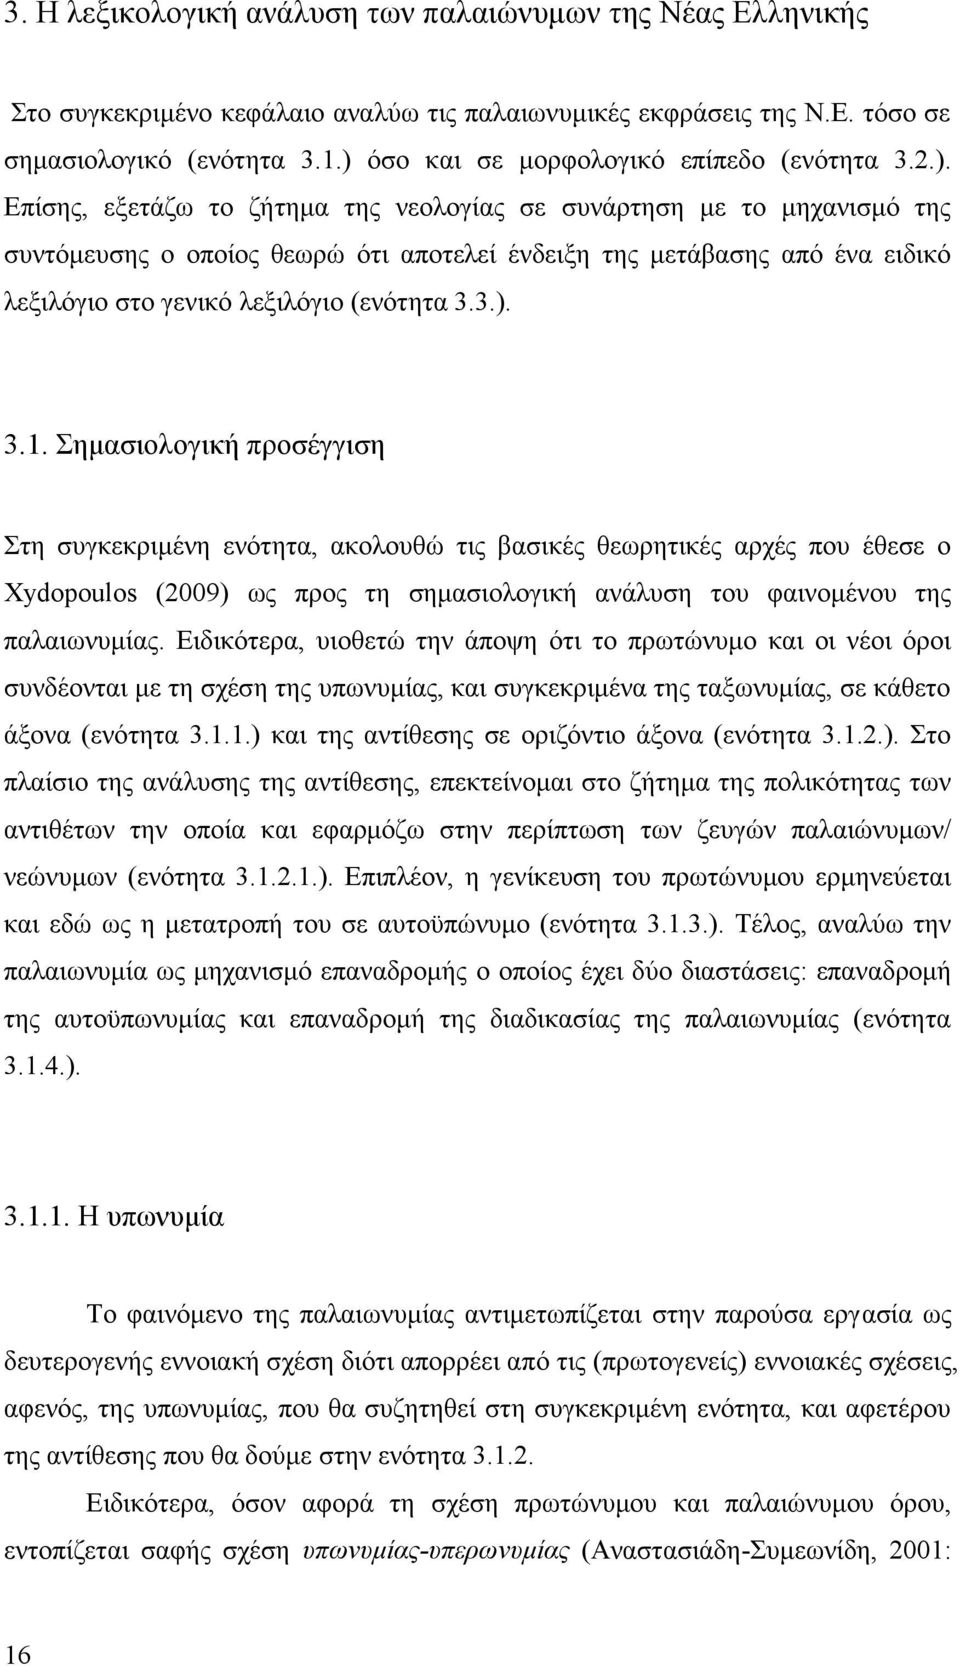 3.). 3.1. Σημασιολογική προσέγγιση Στη συγκεκριμένη ενότητα, ακολουθώ τις βασικές θεωρητικές αρχές που έθεσε ο Xydopoulos (2009) ως προς τη σημασιολογική ανάλυση του φαινομένου της παλαιωνυμίας.